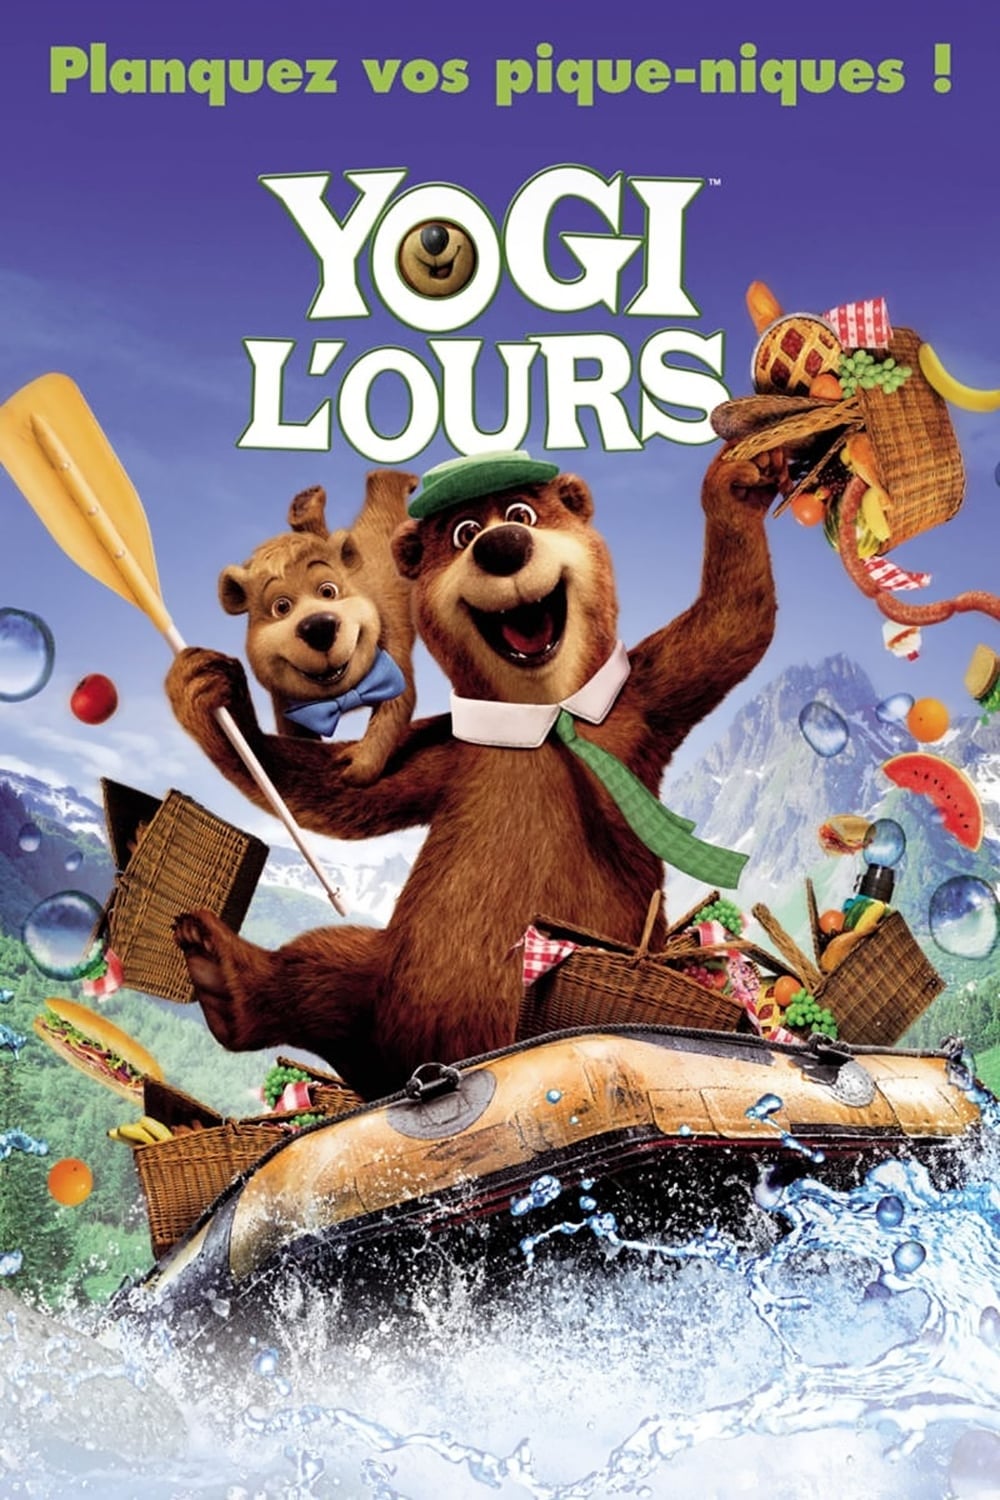 Yogi l'ours est-il disponible sur Netflix ou autre ?